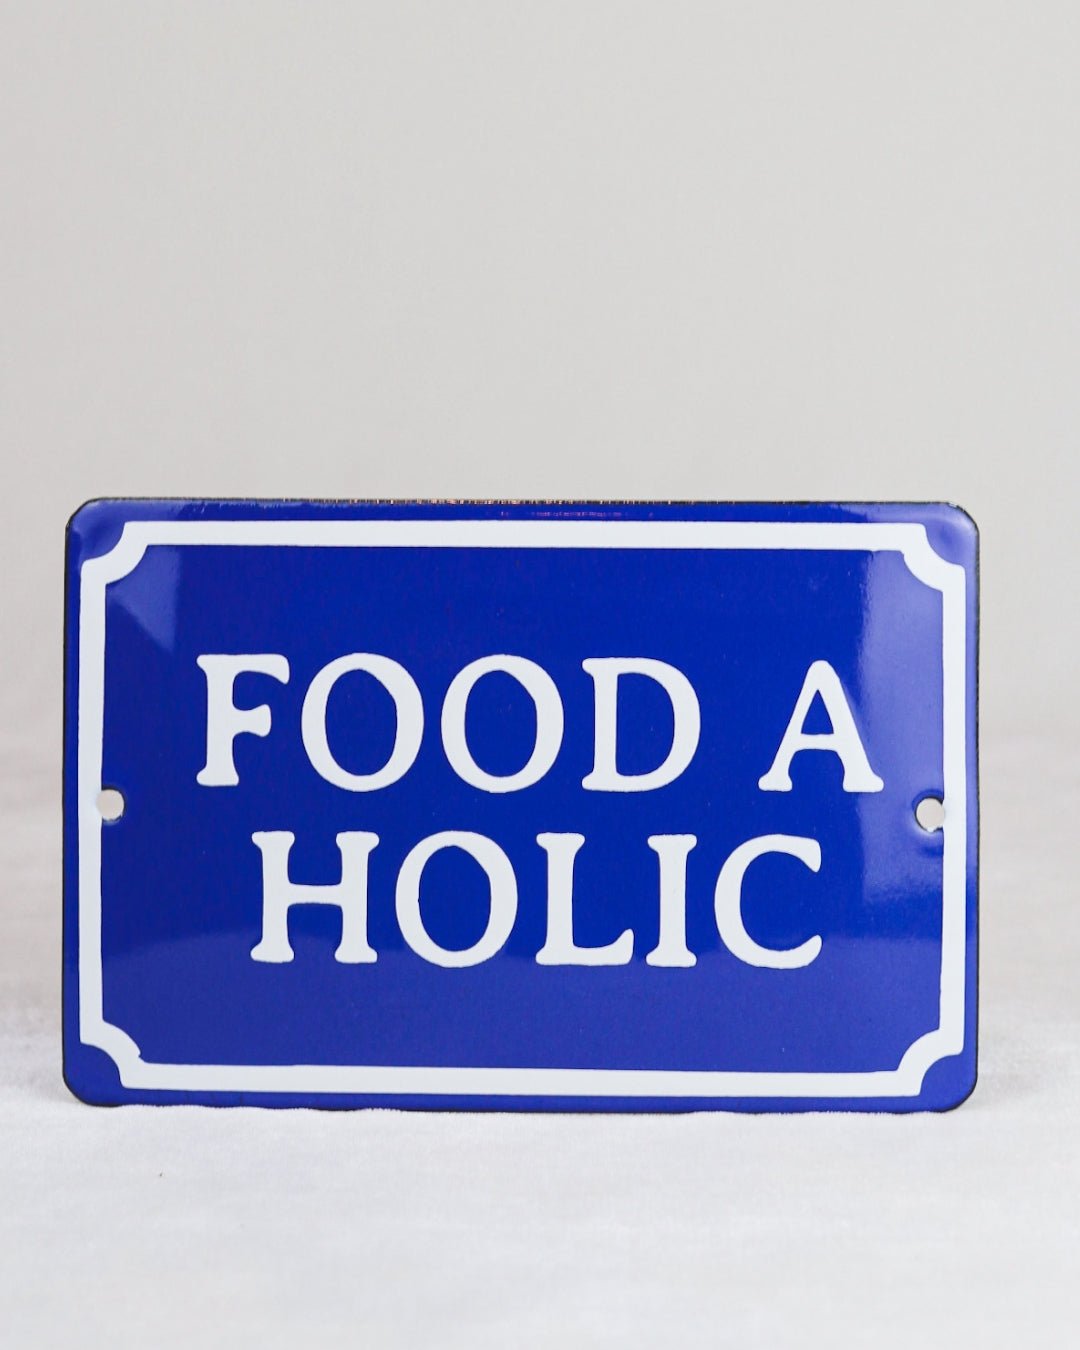 PLAQUINHA FOOD A HOLIC